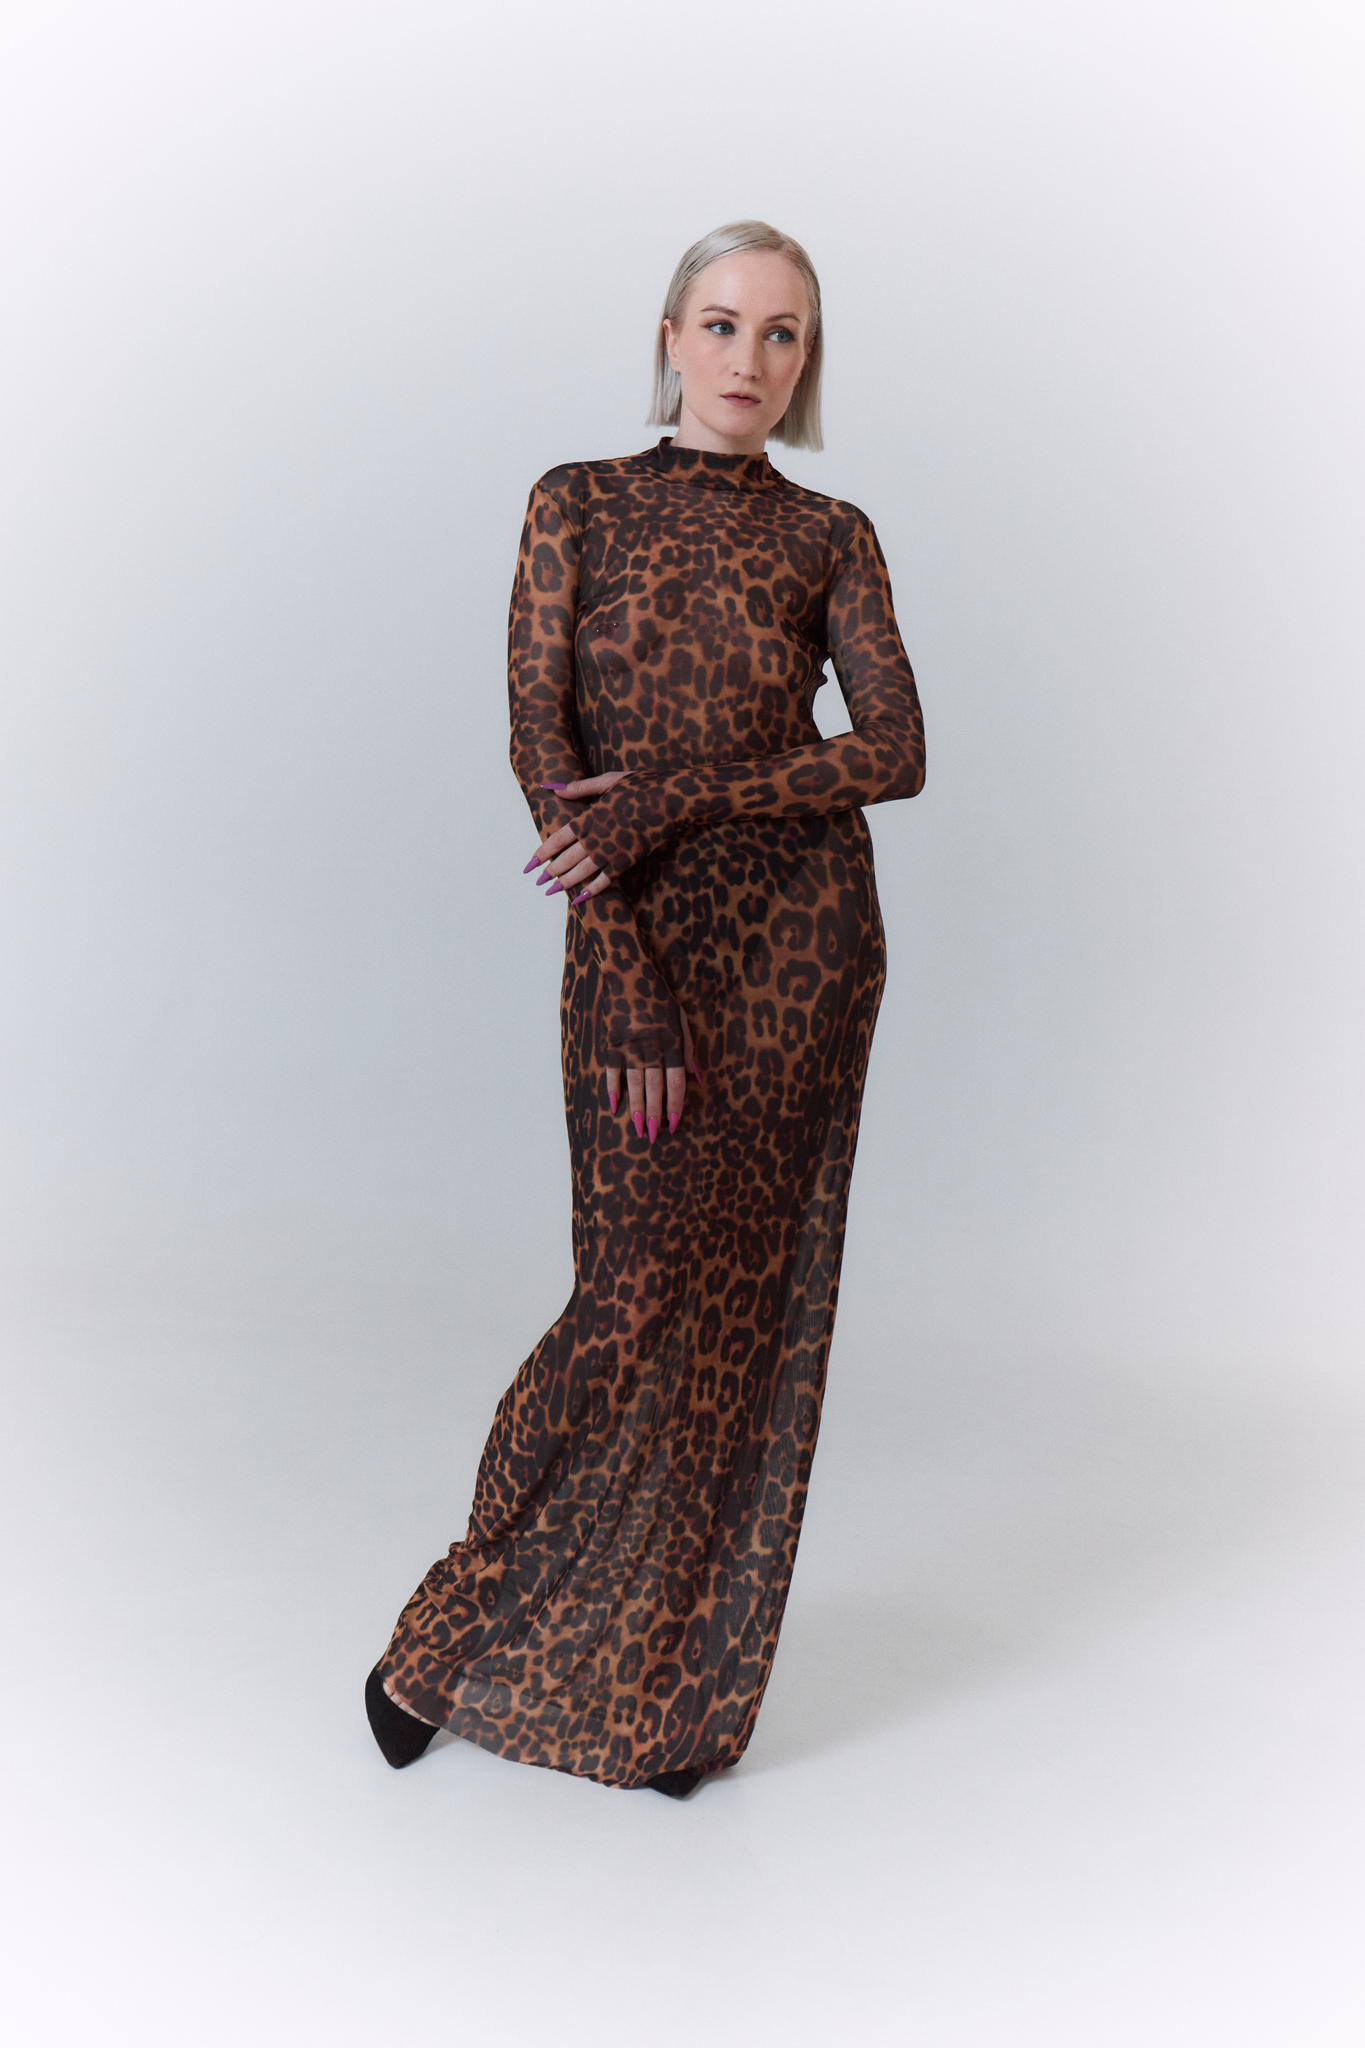 Показ леопардового платья с черными туфлями